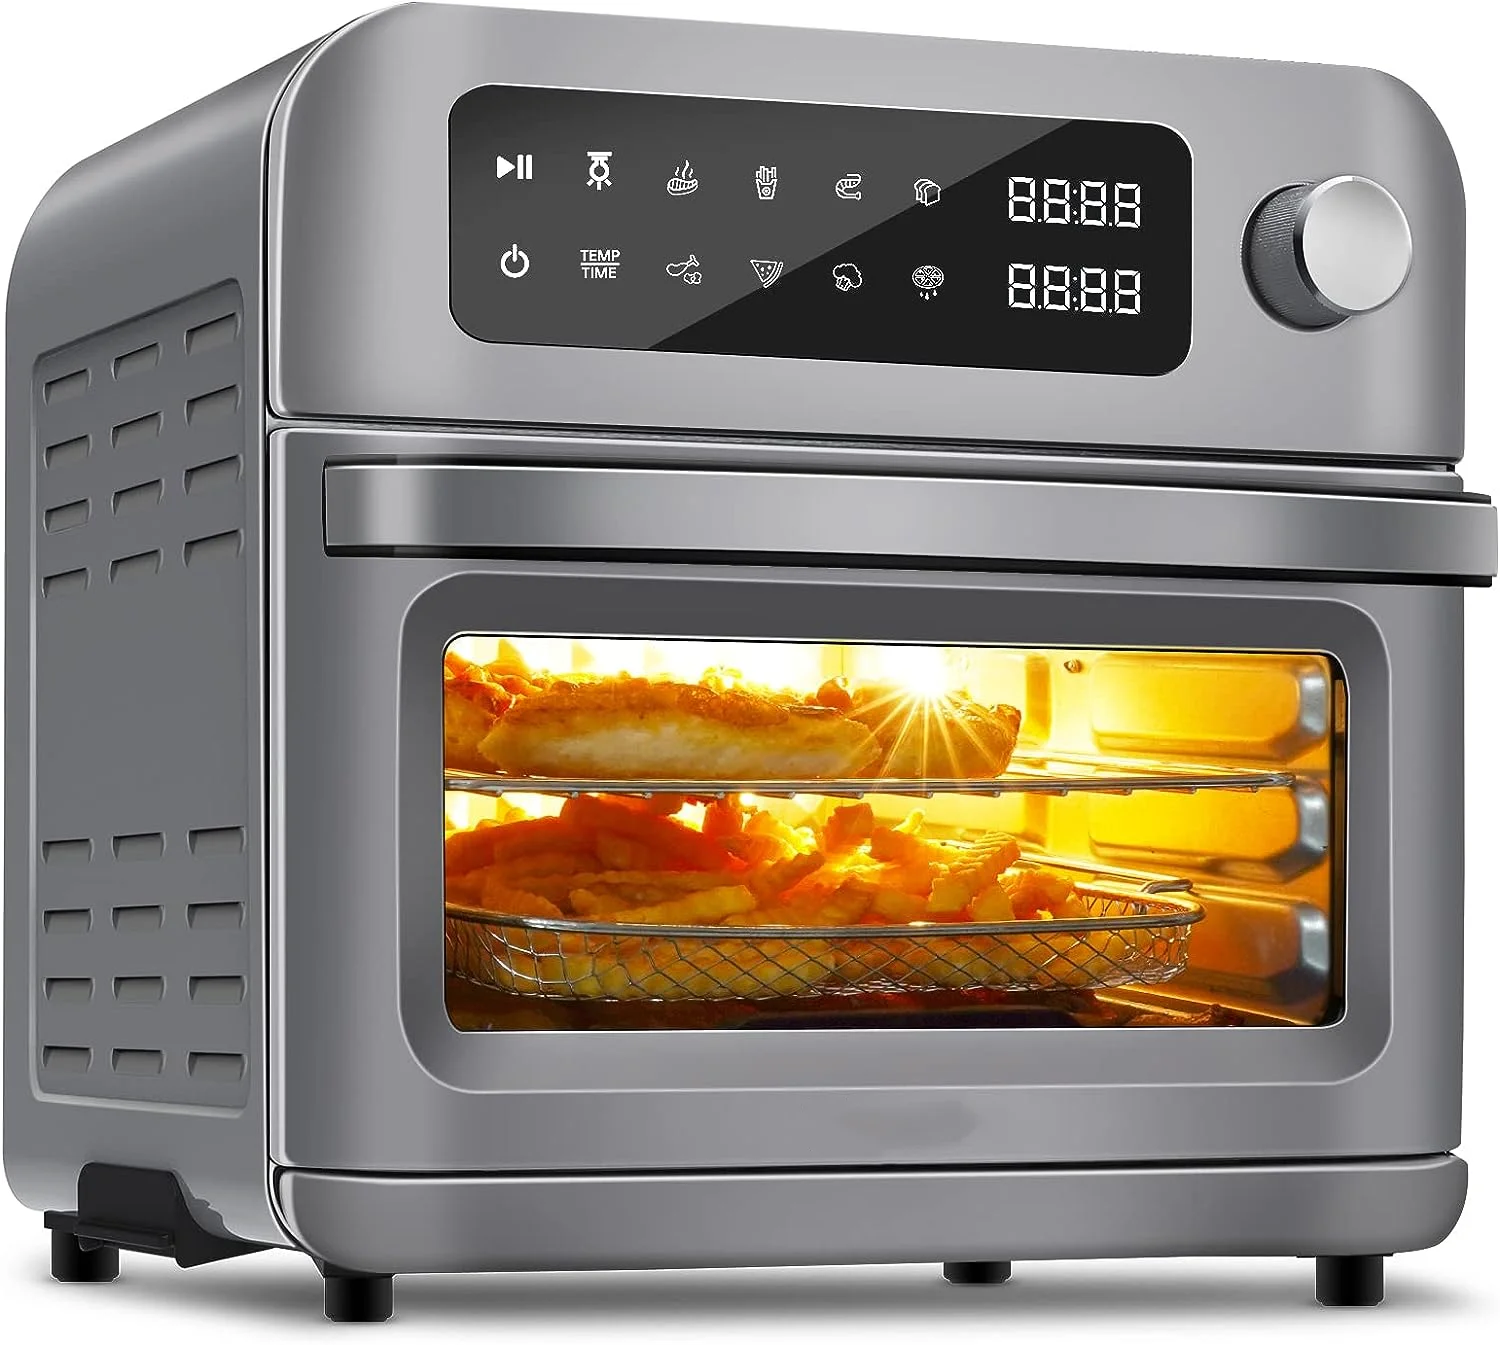 

Жаровня, тостер, духовка Высокой Мощности 1700 Вт, сушилка с сенсорным экраном, конвекционная настольная печь, можно мыть в посудомоечной машине